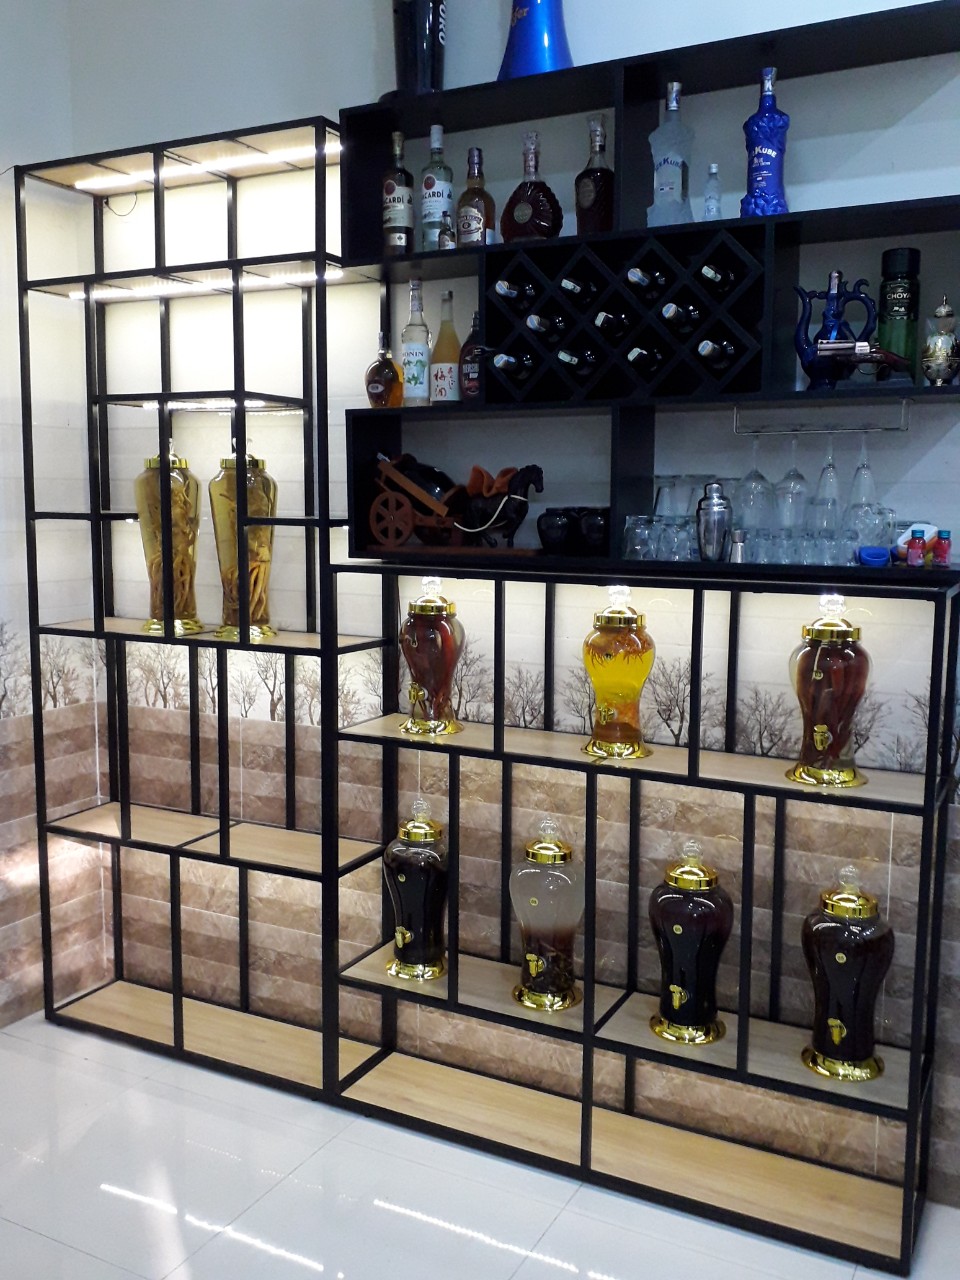 Tủ rượu khung sắt là sự lựa chọn hoàn hảo cho các tín đồ sưu tập rượu. Với thiết kế đơn giản nhưng hiện đại, tủ rượu khung sắt sẽ giúp bạn trưng bày những chai rượu quý giá một cách tinh tế và sang trọng.